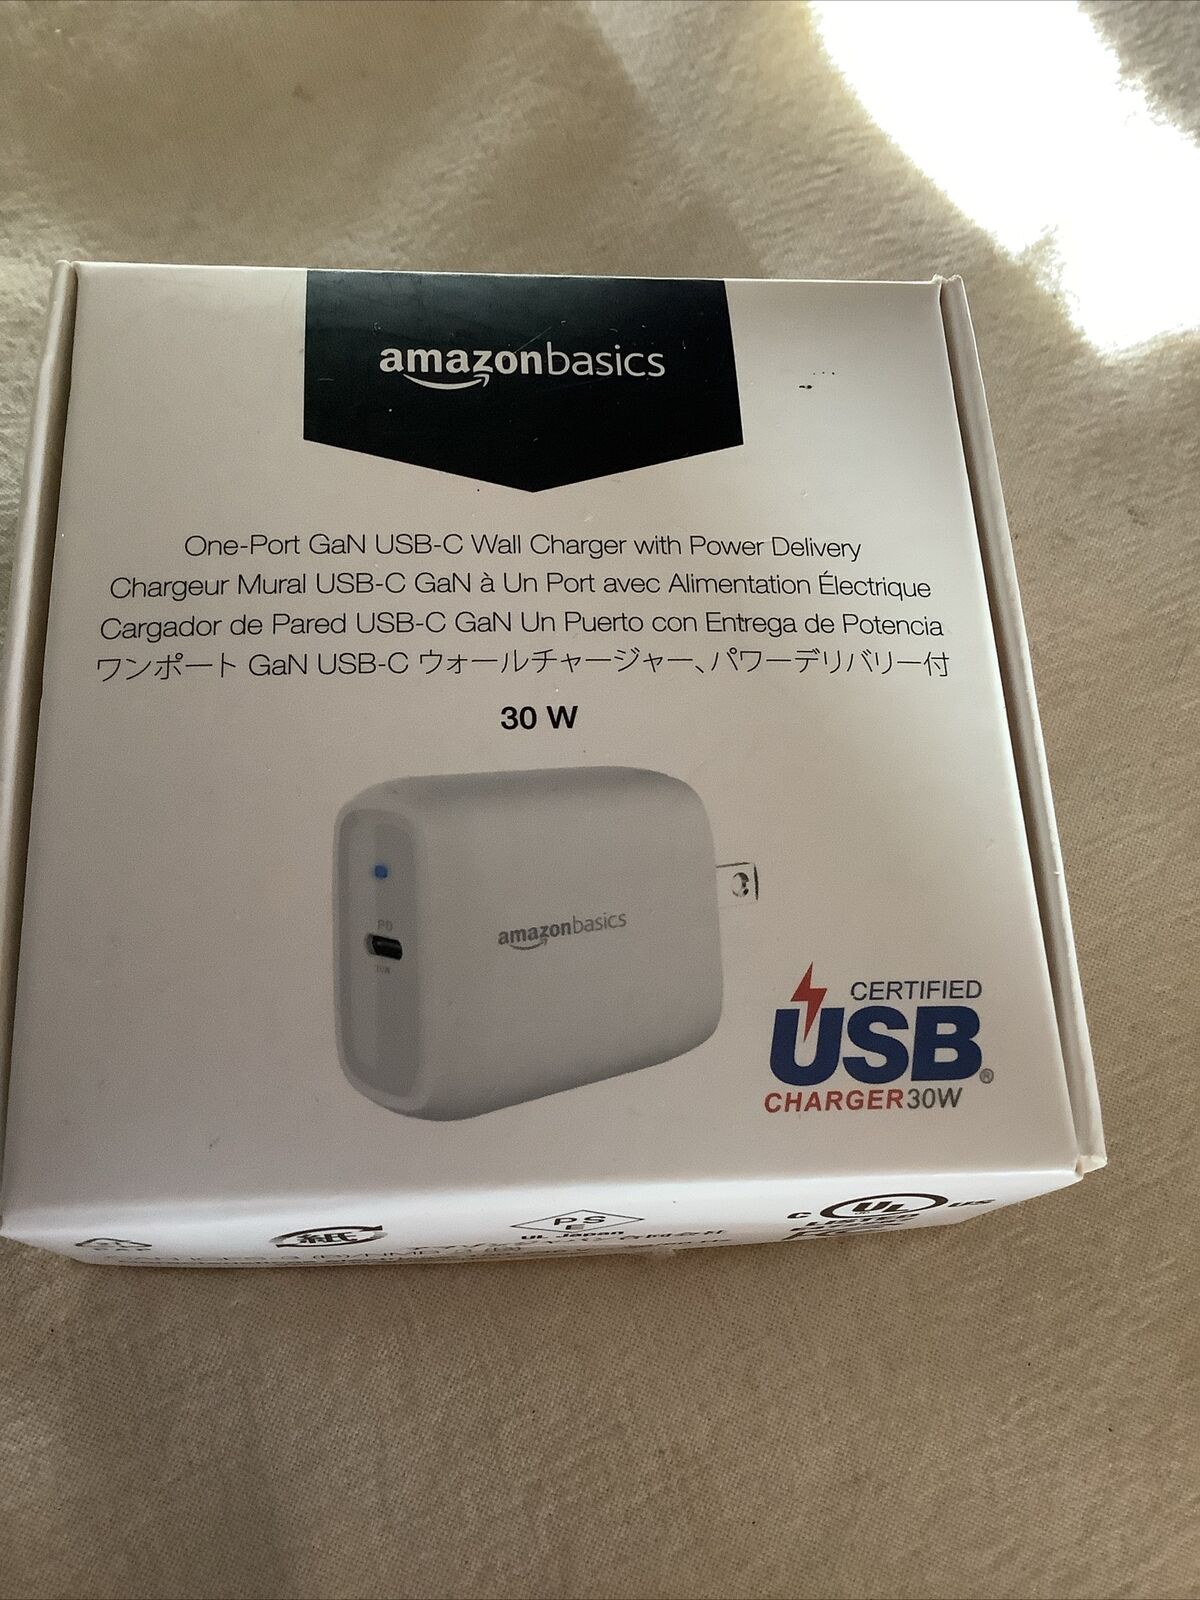 Amazon Basics USB Charger 30W~ New Never Used